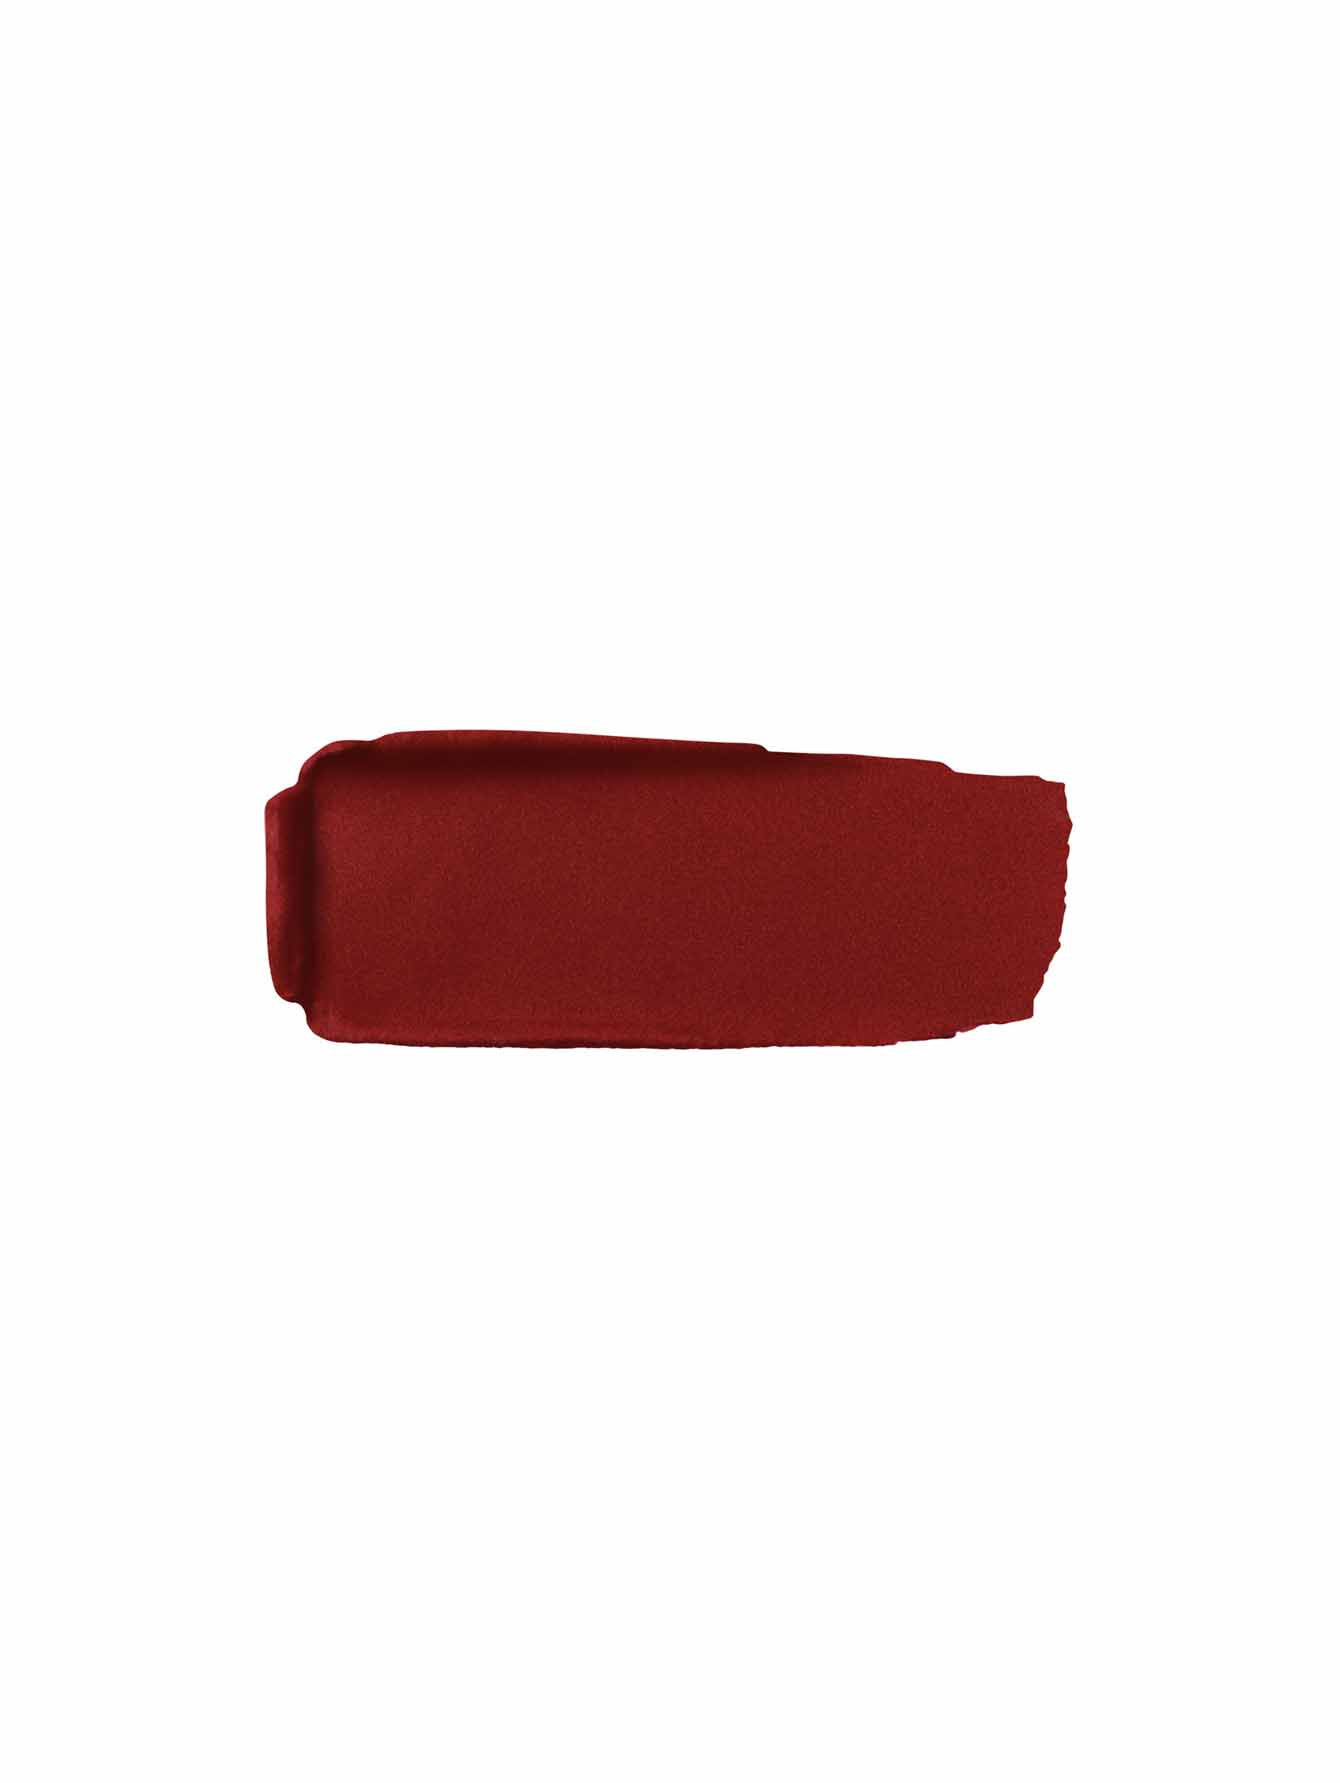 Матовая губная помада №219 Красная вишня Rouge G - Обтравка1